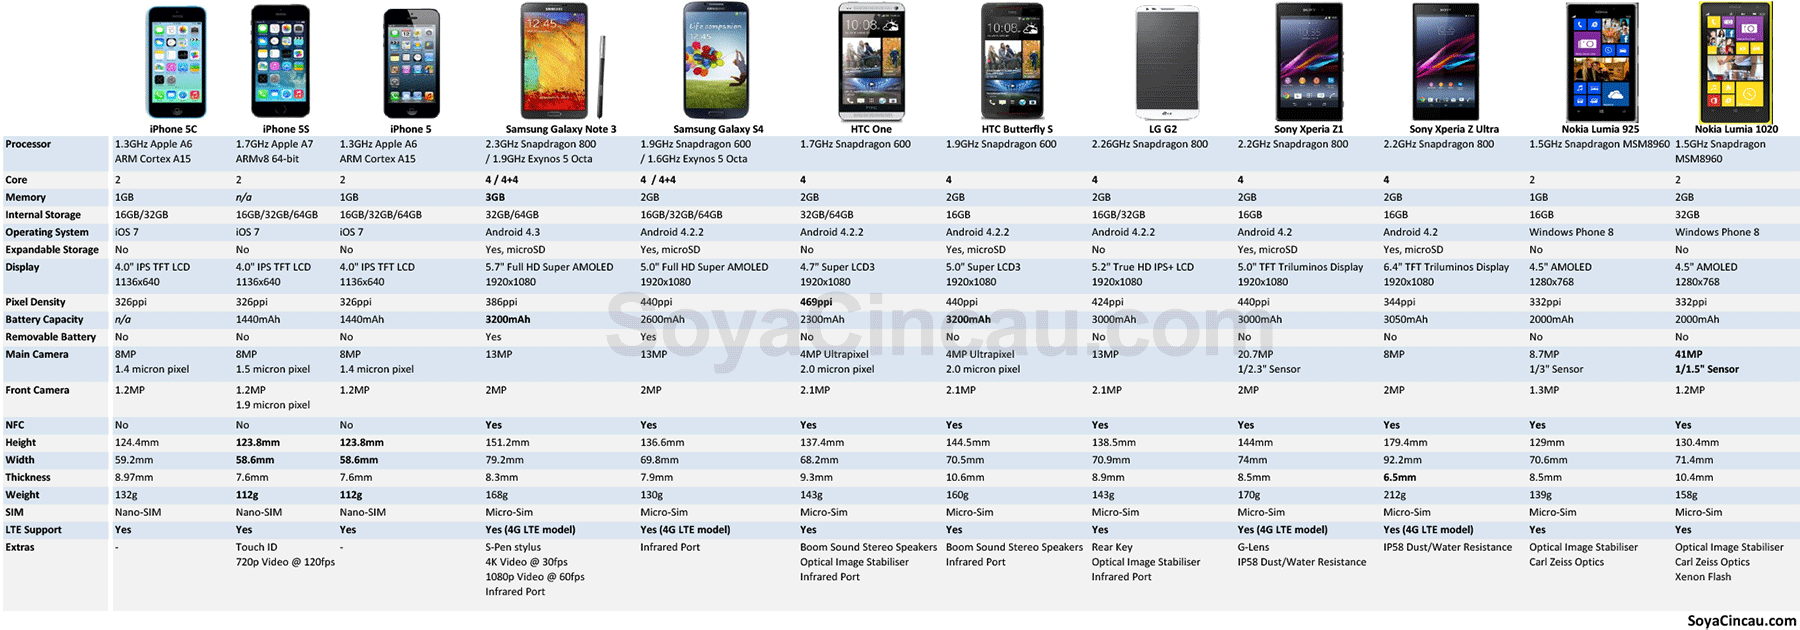 130911-iphone-5c-iphone-5s-spec-comparison